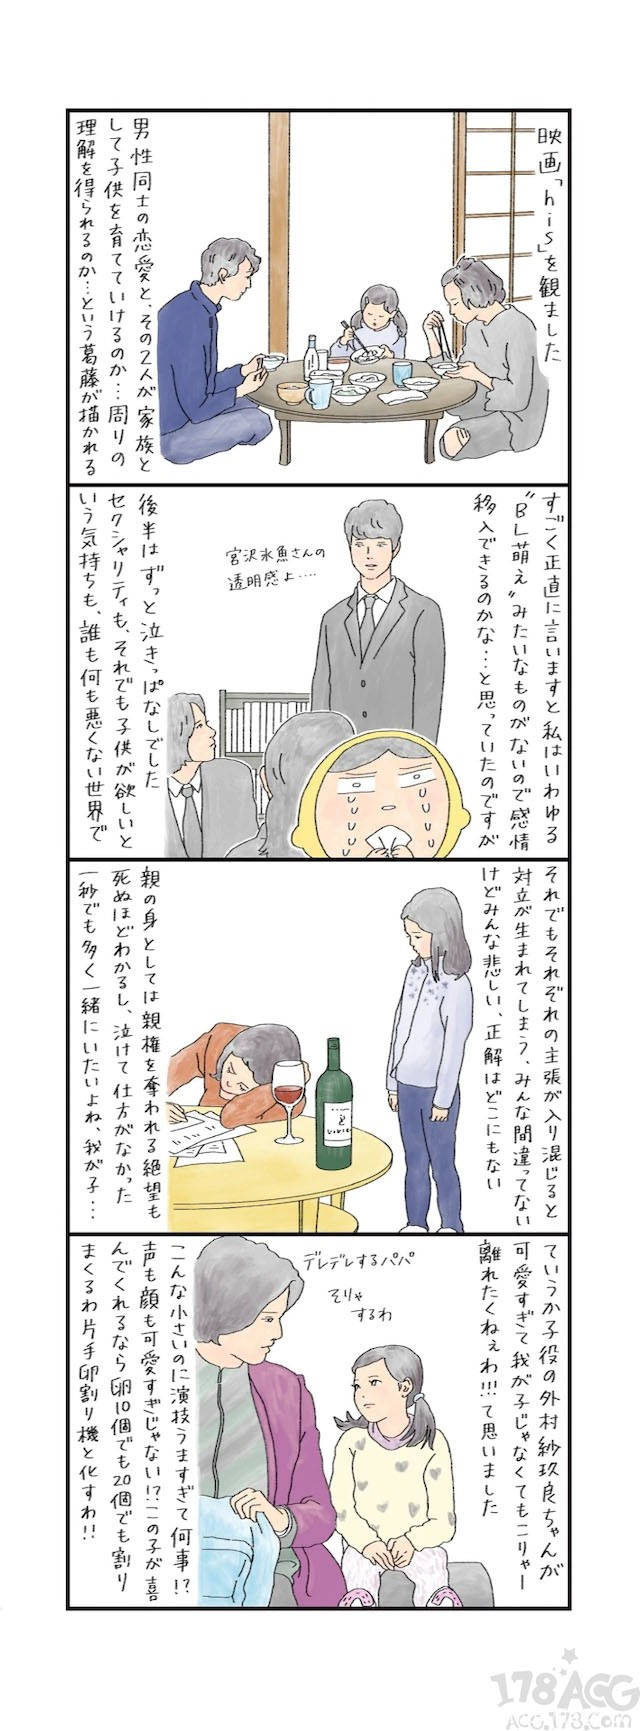 雁须磨子、小池田マヤ、はるな柠檬绘制电影「his」支援插图